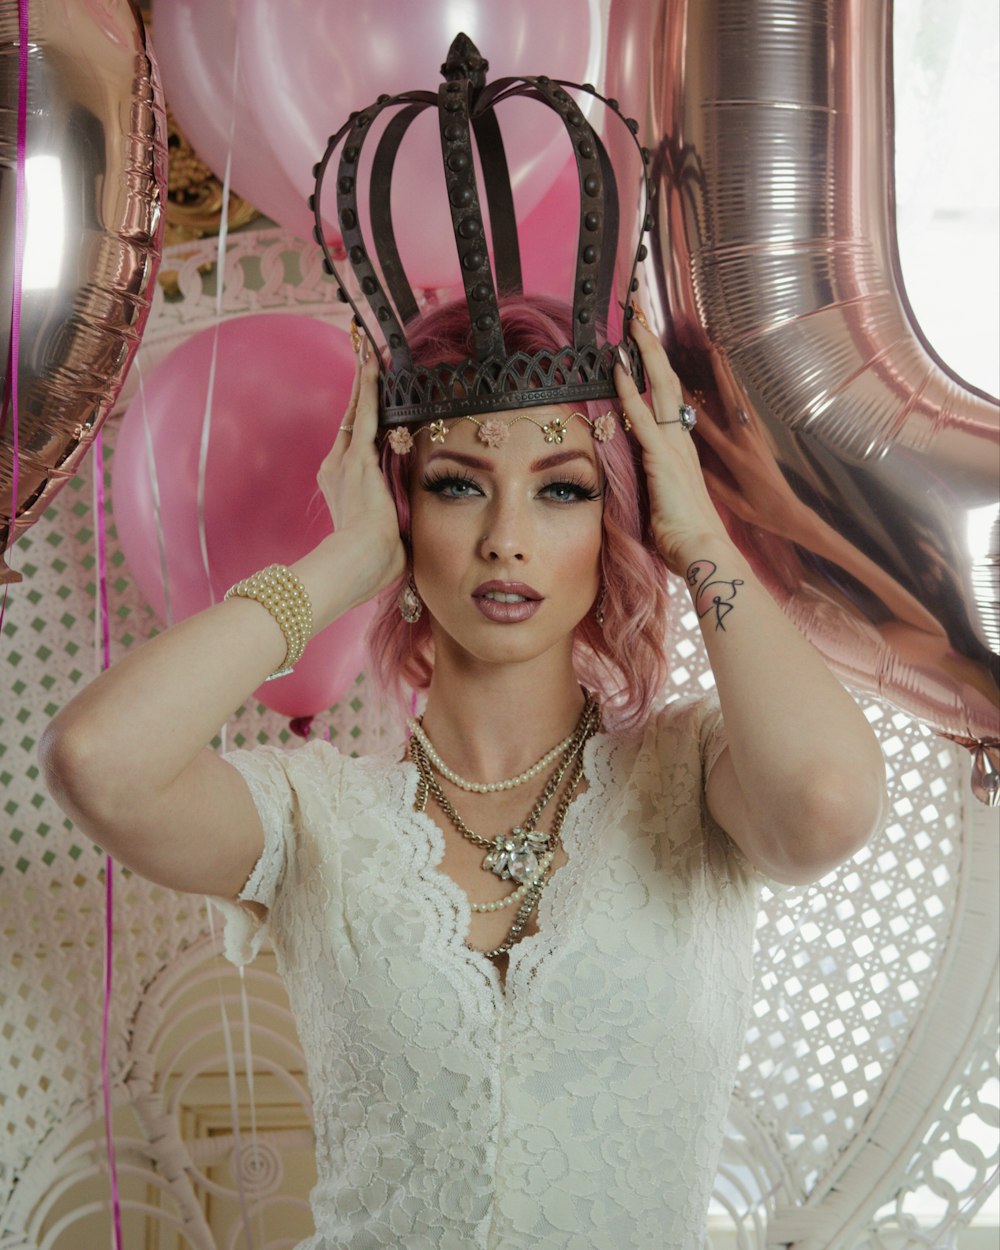 Una donna con i capelli rosa che indossa una corona